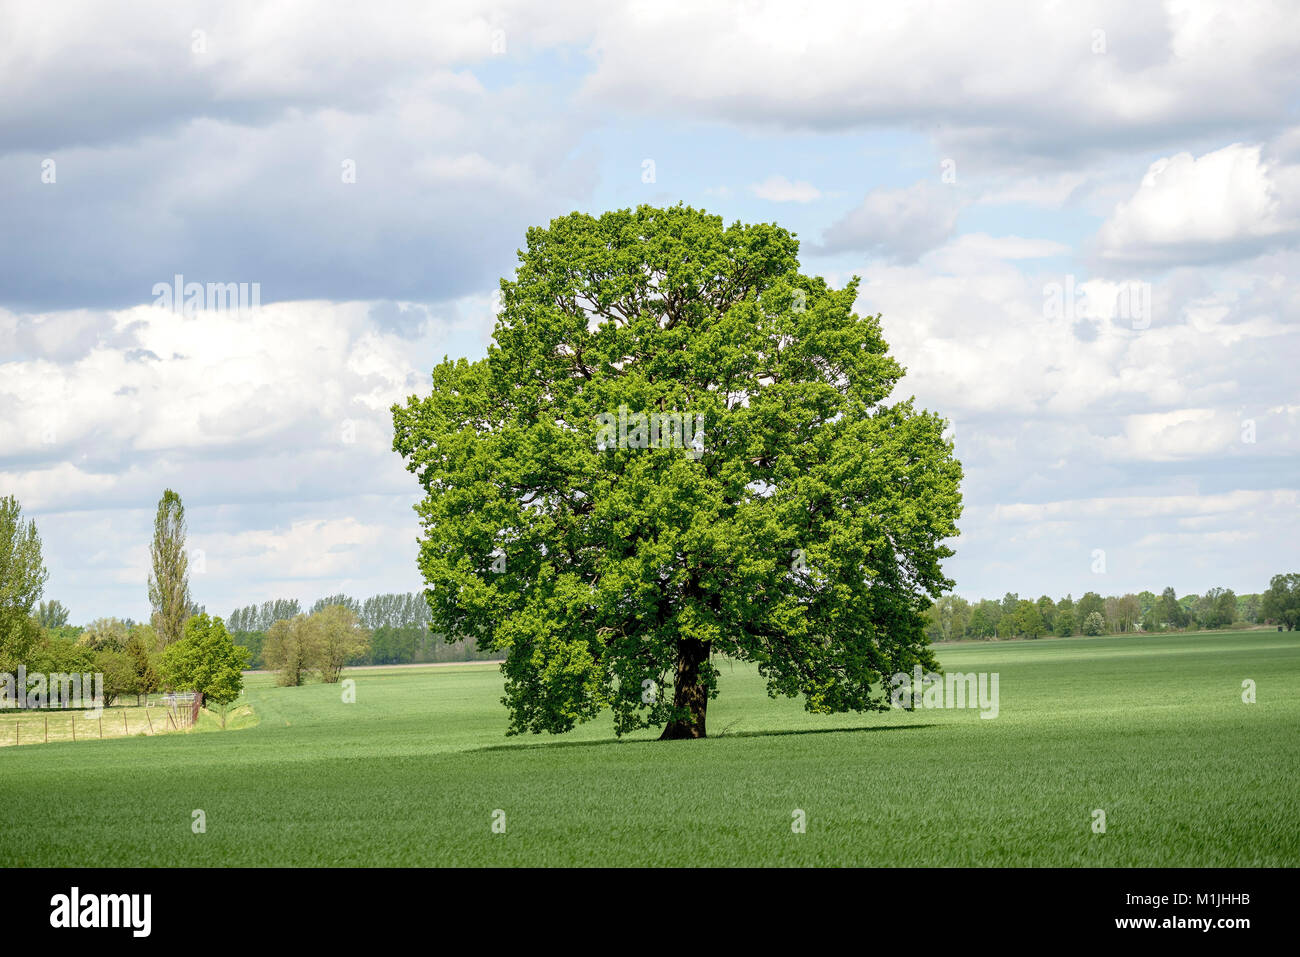 Pedunculate oak (Quercus robur), Stiel-Eiche (Quercus robur) Stock Photo